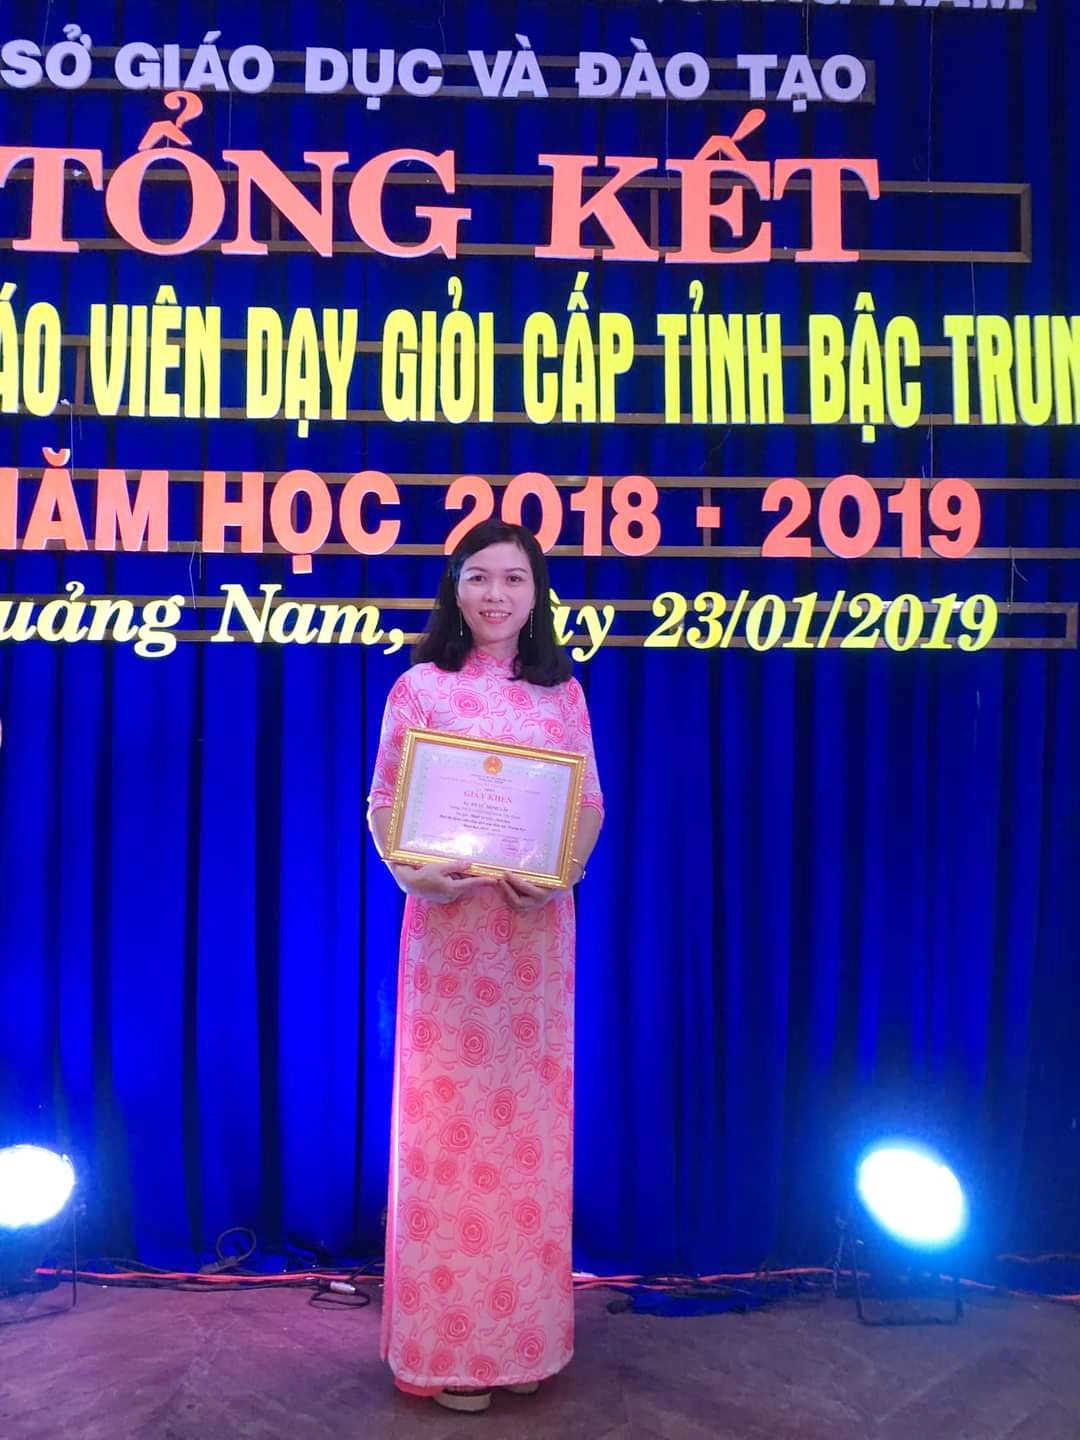 Cô giáo Tô Vũ Minh Lài trong buổi nhận trao giải hội thi giáo viên giỏi cấp tỉnh bậc THCS.